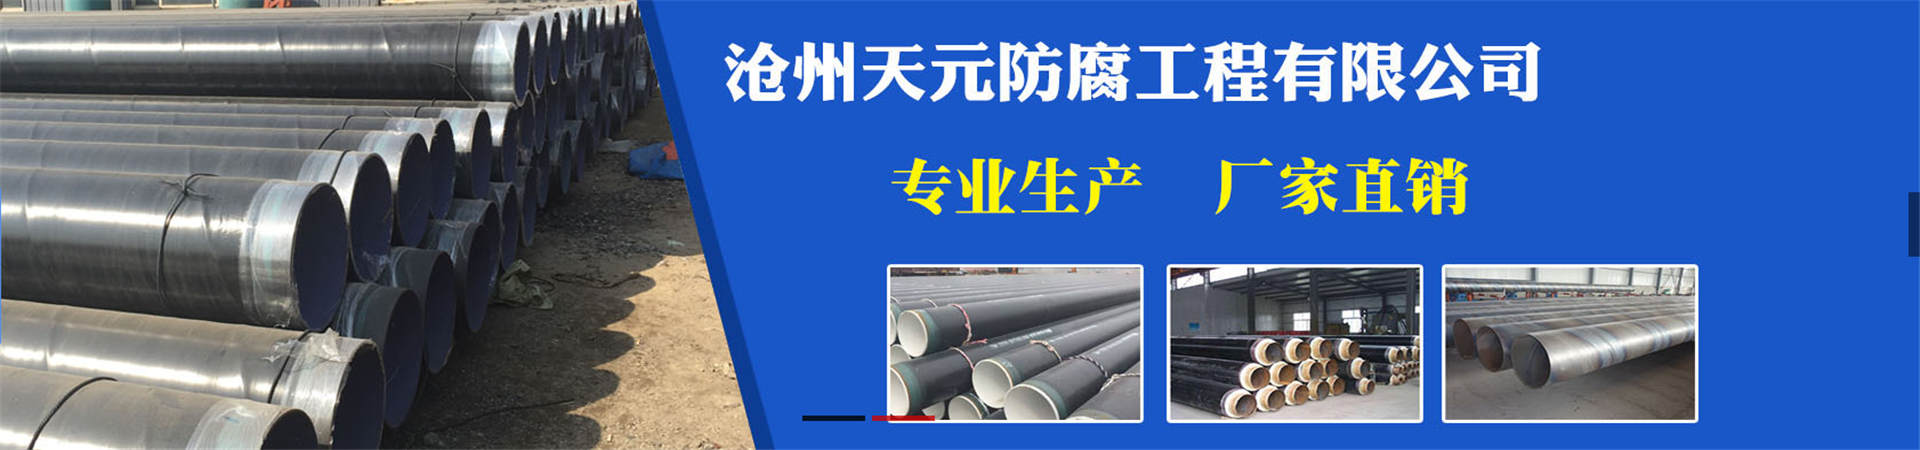 推荐福州加强级普通机级国标部标涂塑钢管生产厂家服务